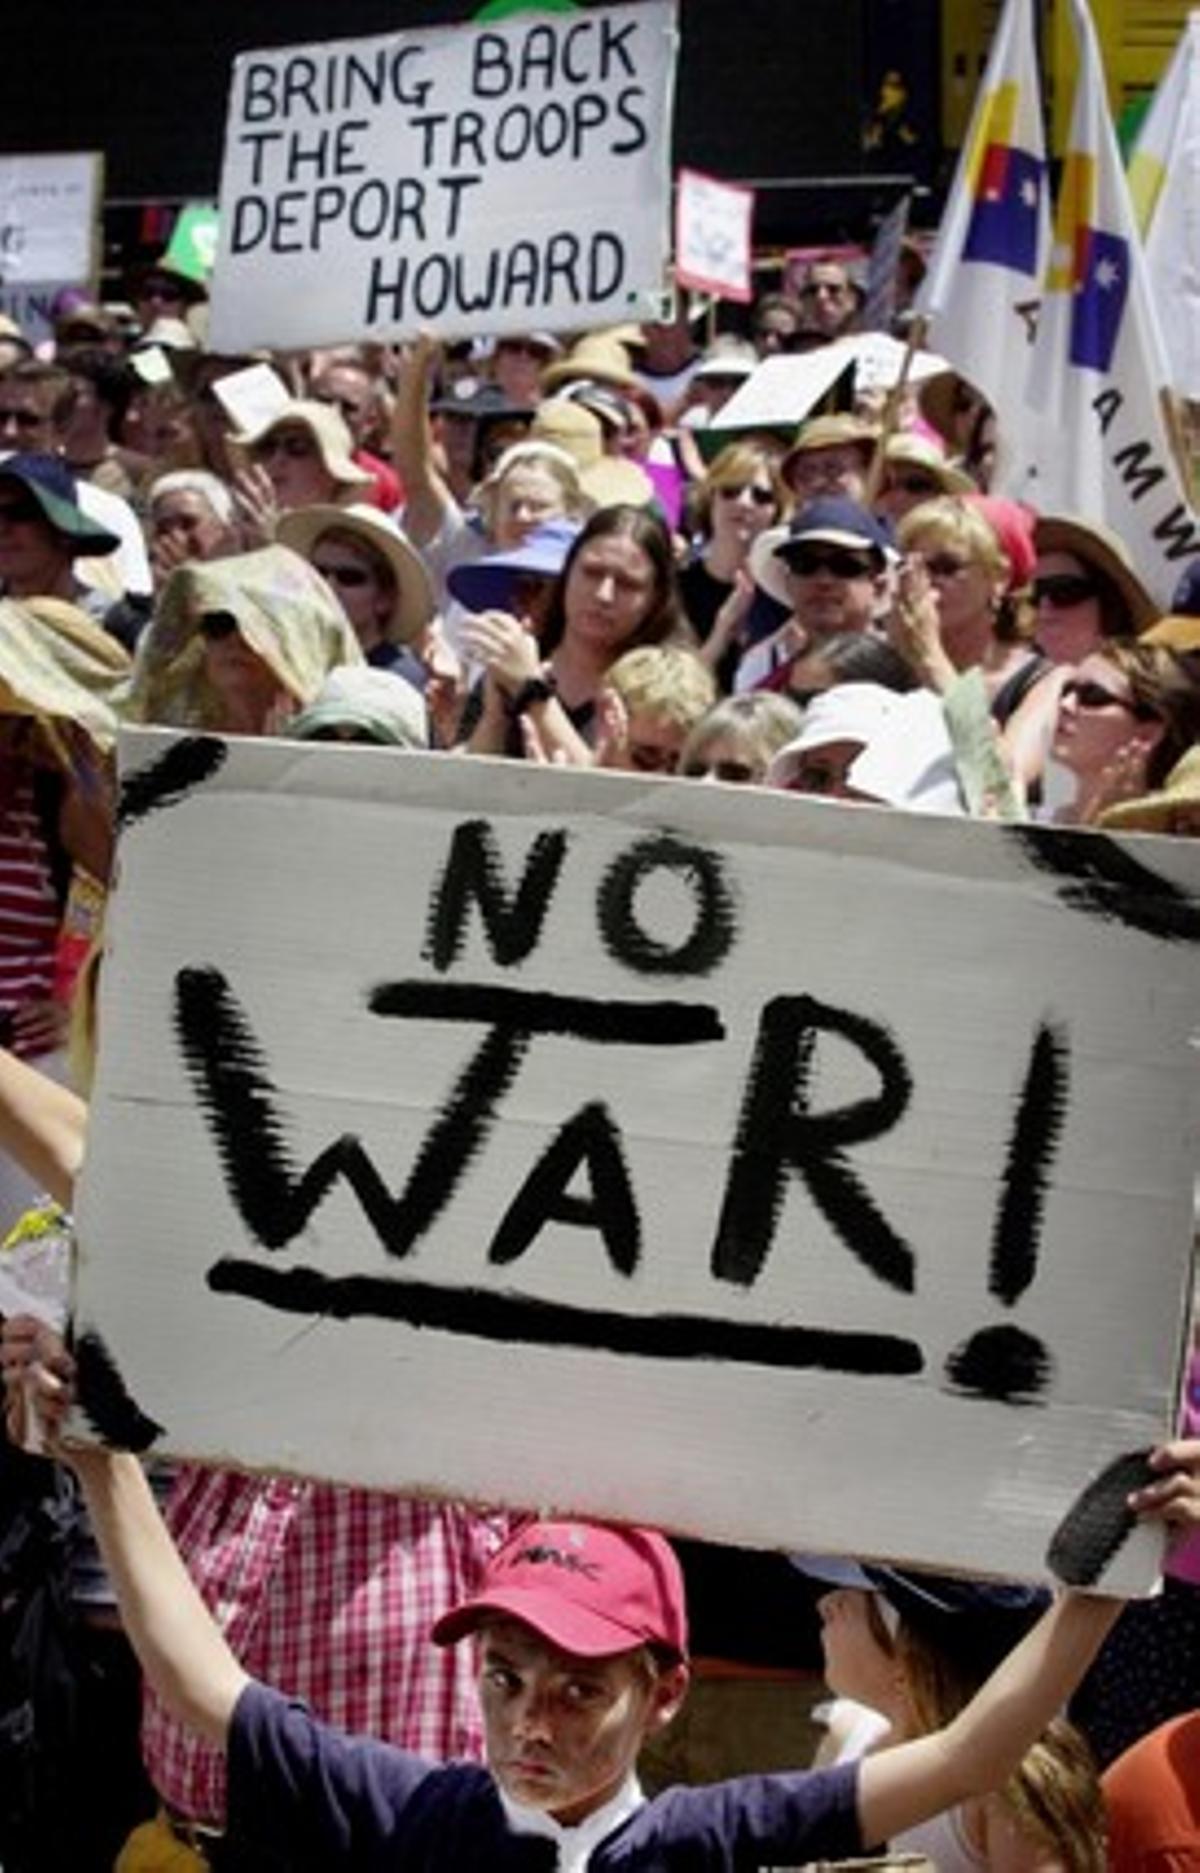 Unas 100.000 personas protagonizaron la multitudinaria manifestación en la ciudad de Melbourne, en un país que apoyó firme y abiertamente la guerra en Irak. En la foto, un niño sostiene una pancarta -’¡No a la guerra!’- en la localidad de Perth.